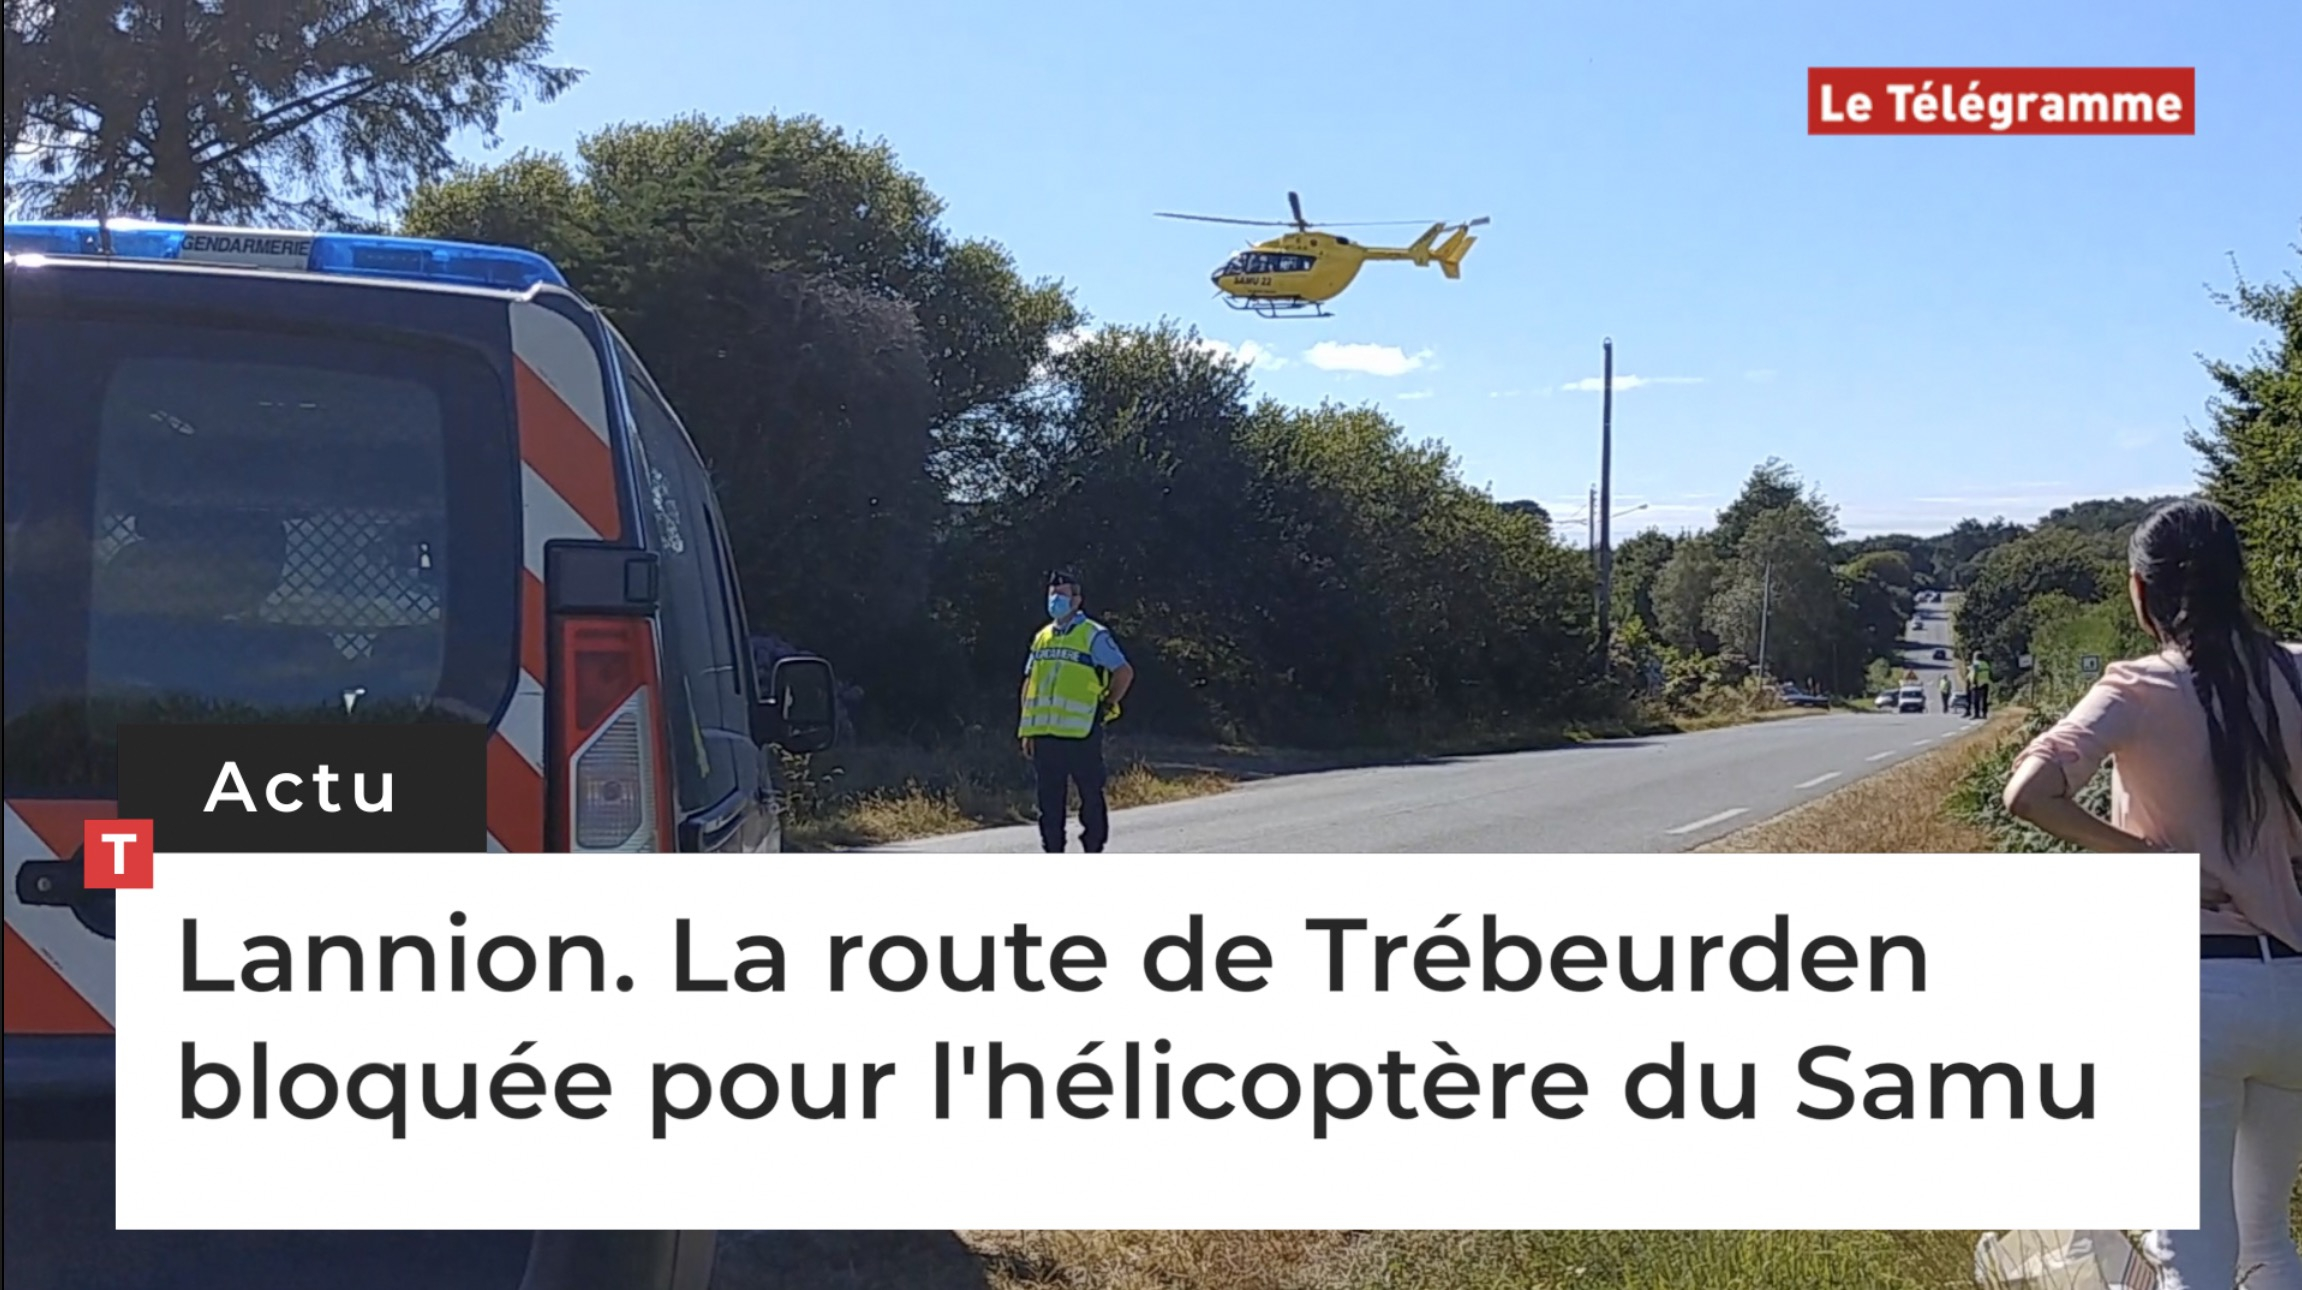 Lannion. La route de Trébeurden bloquée pour l'hélicoptère du Samu (Le Télégramme)